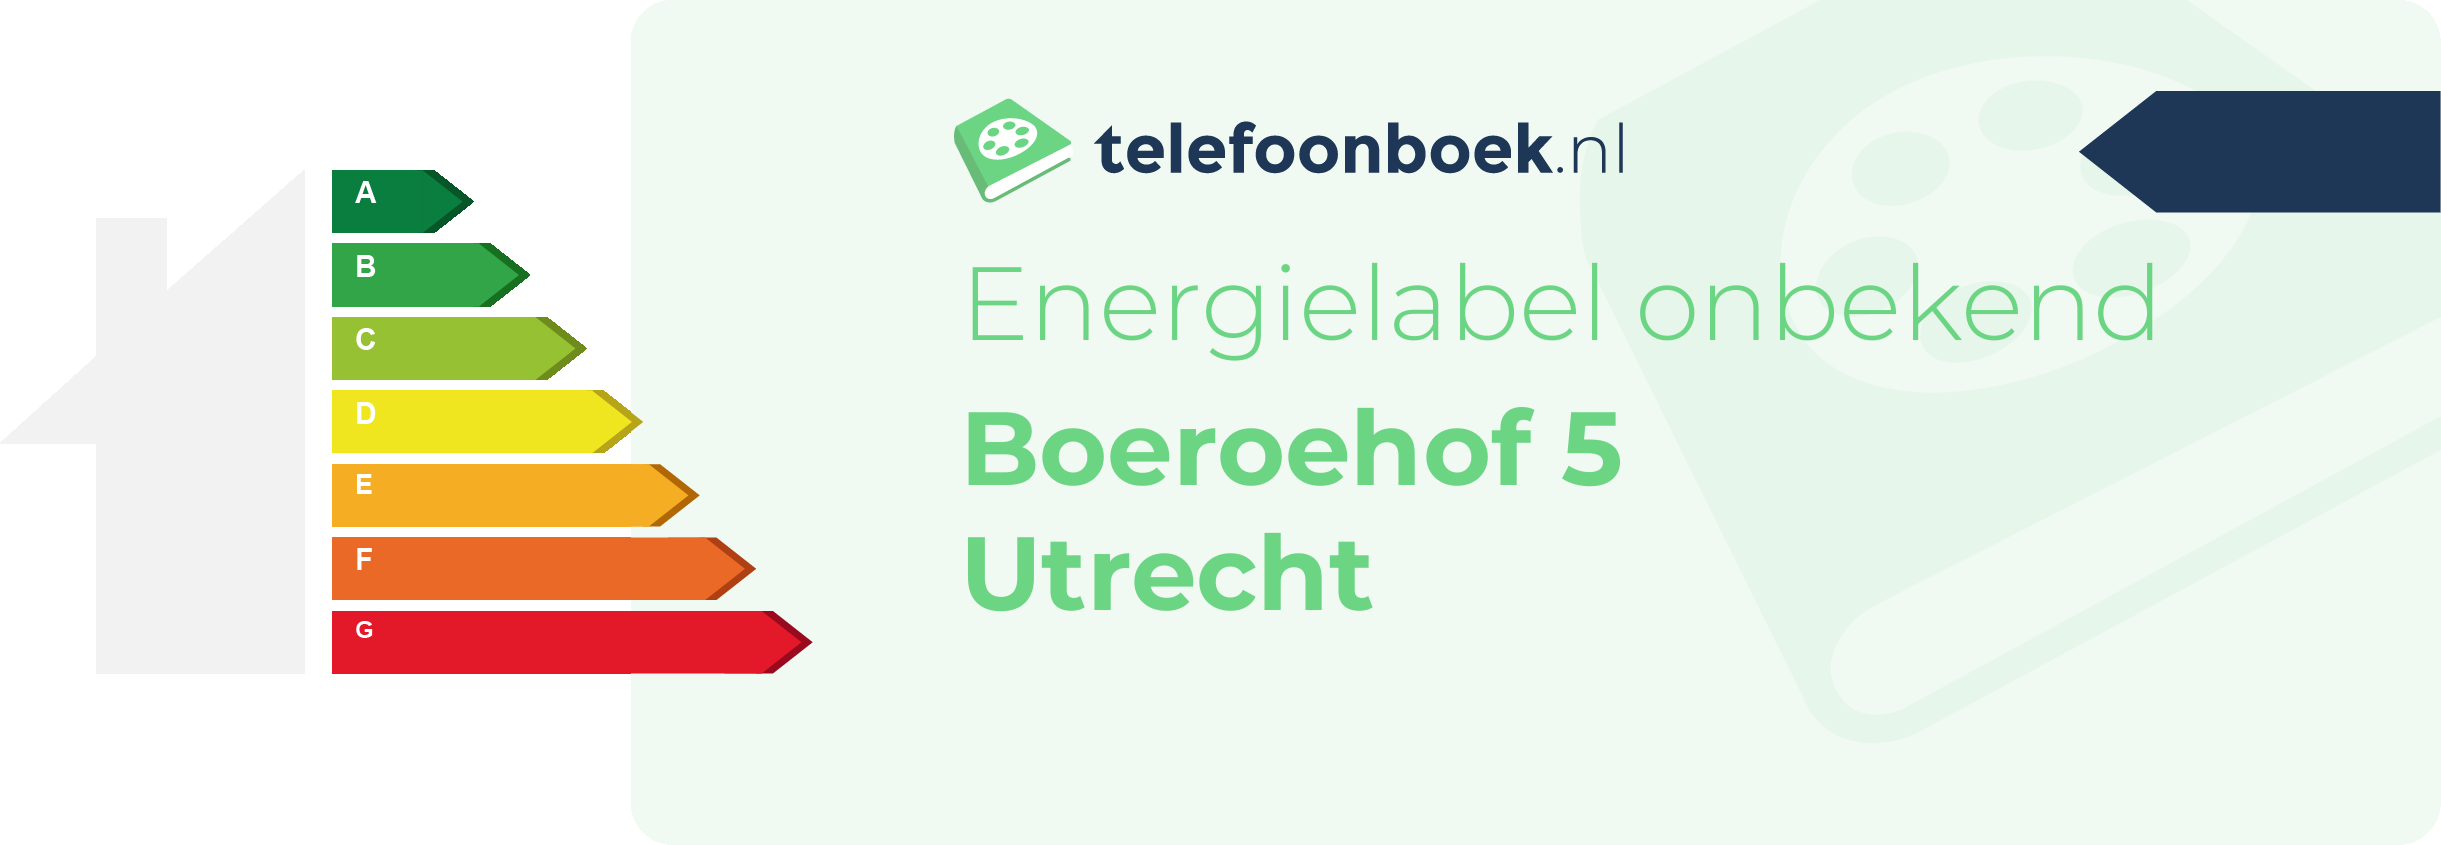 Energielabel Boeroehof 5 Utrecht